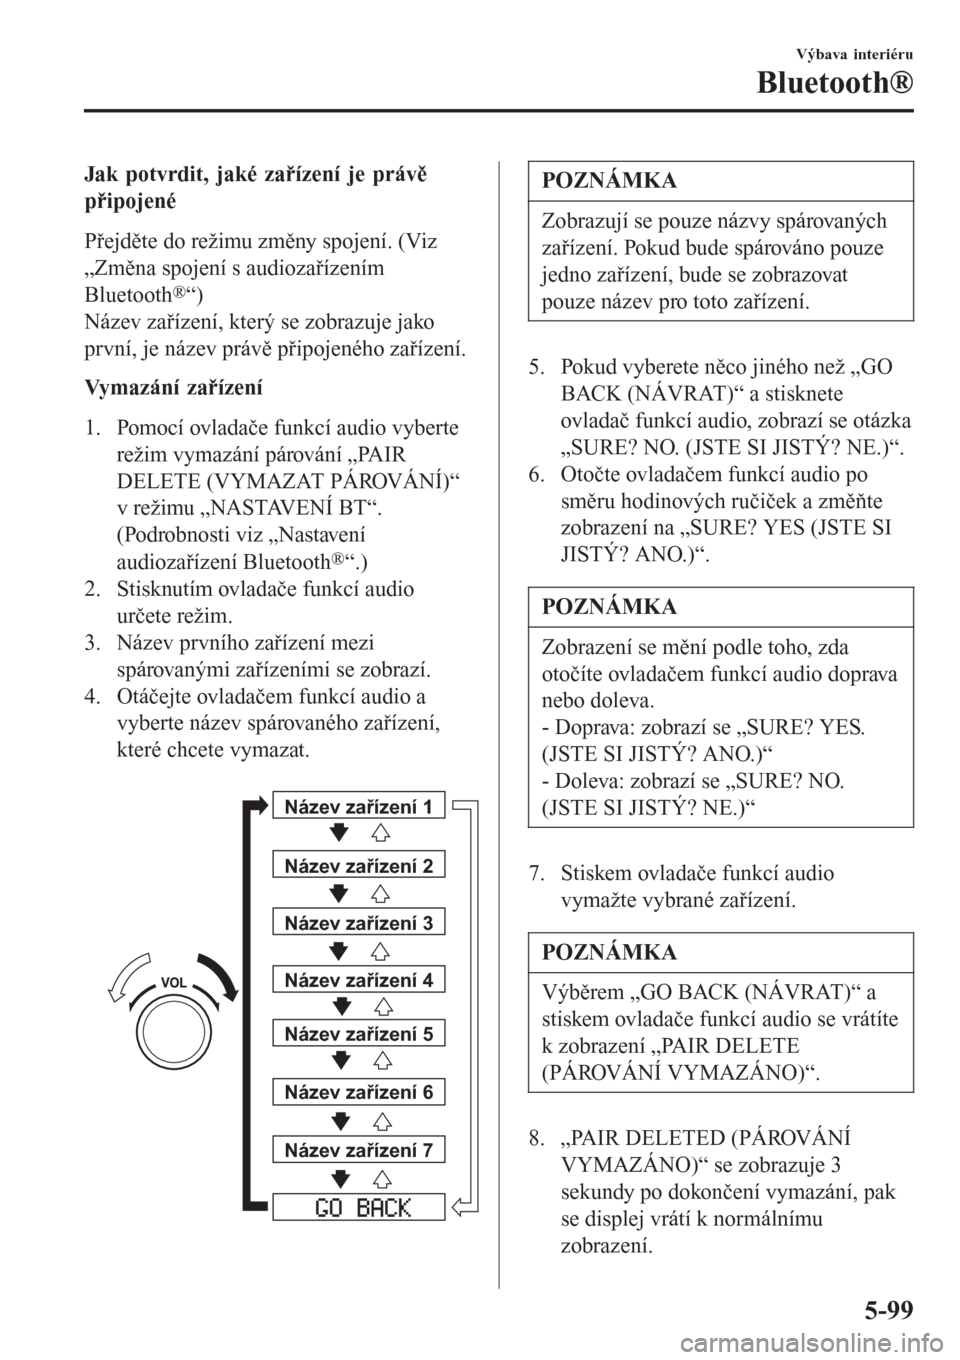 MAZDA MODEL CX-3 2015  Návod k obsluze (in Czech) Jak potvrdit, jaké zařízení je právě
připojené
Přejděte do režimu změny spojení. (Viz
„Změna spojení s audiozařízením
Bluetooth
®“)
Název zařízení, který se zobrazuje jako
